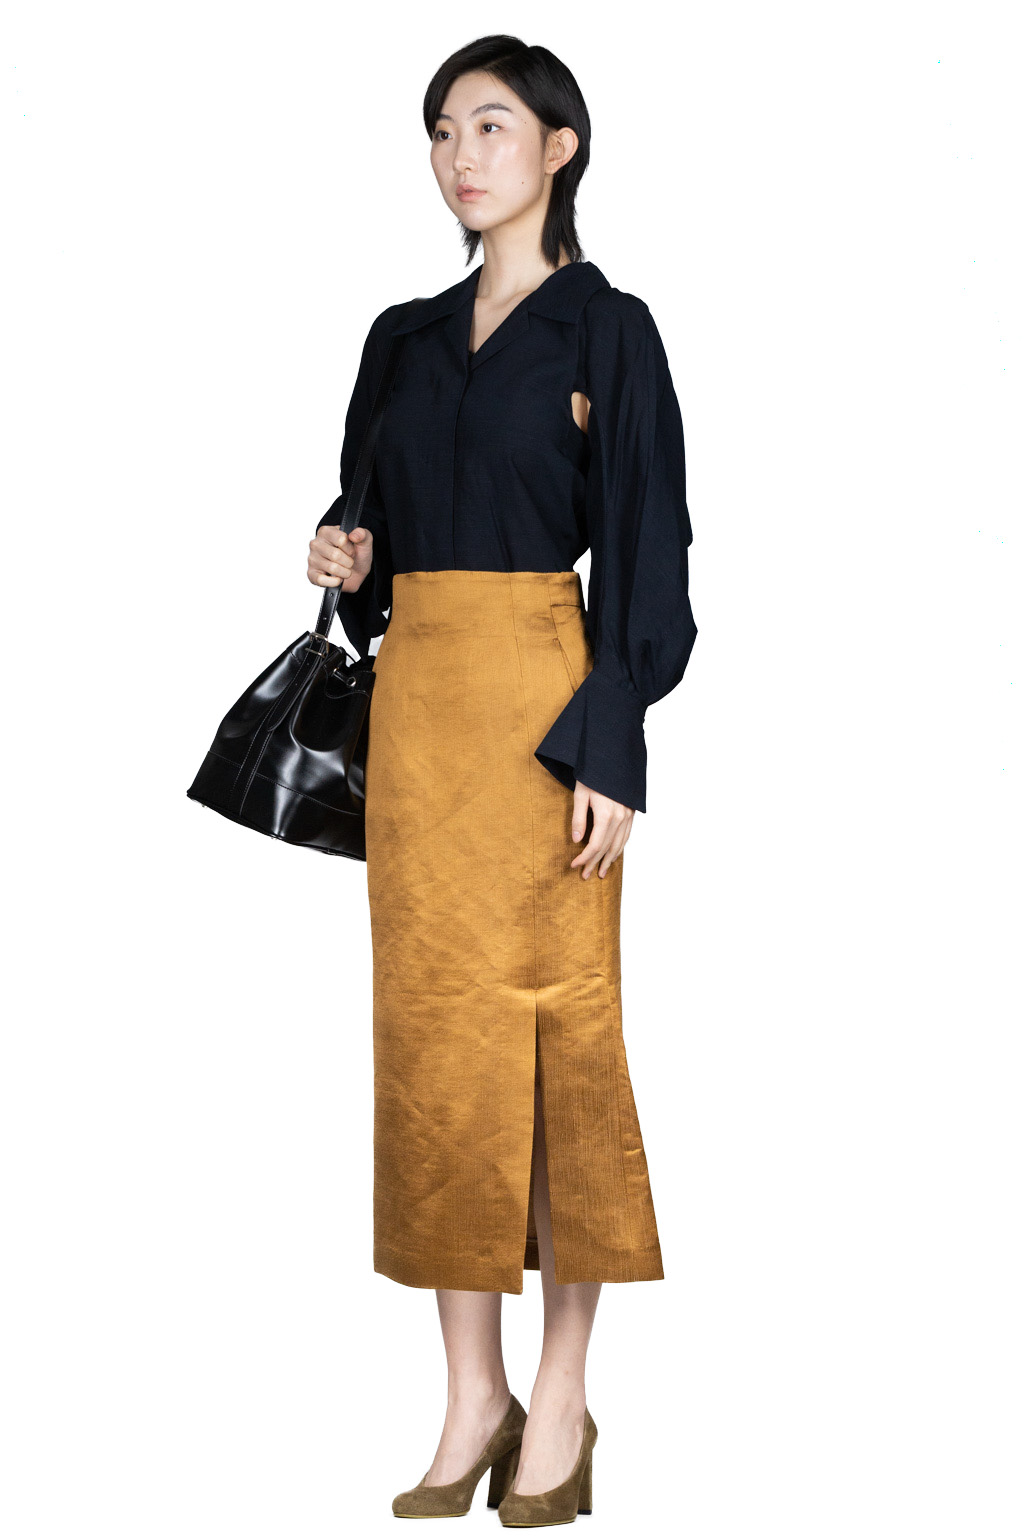 Mame Kurogouchi Linen Silk High Waisted Slit Skirt - Brown